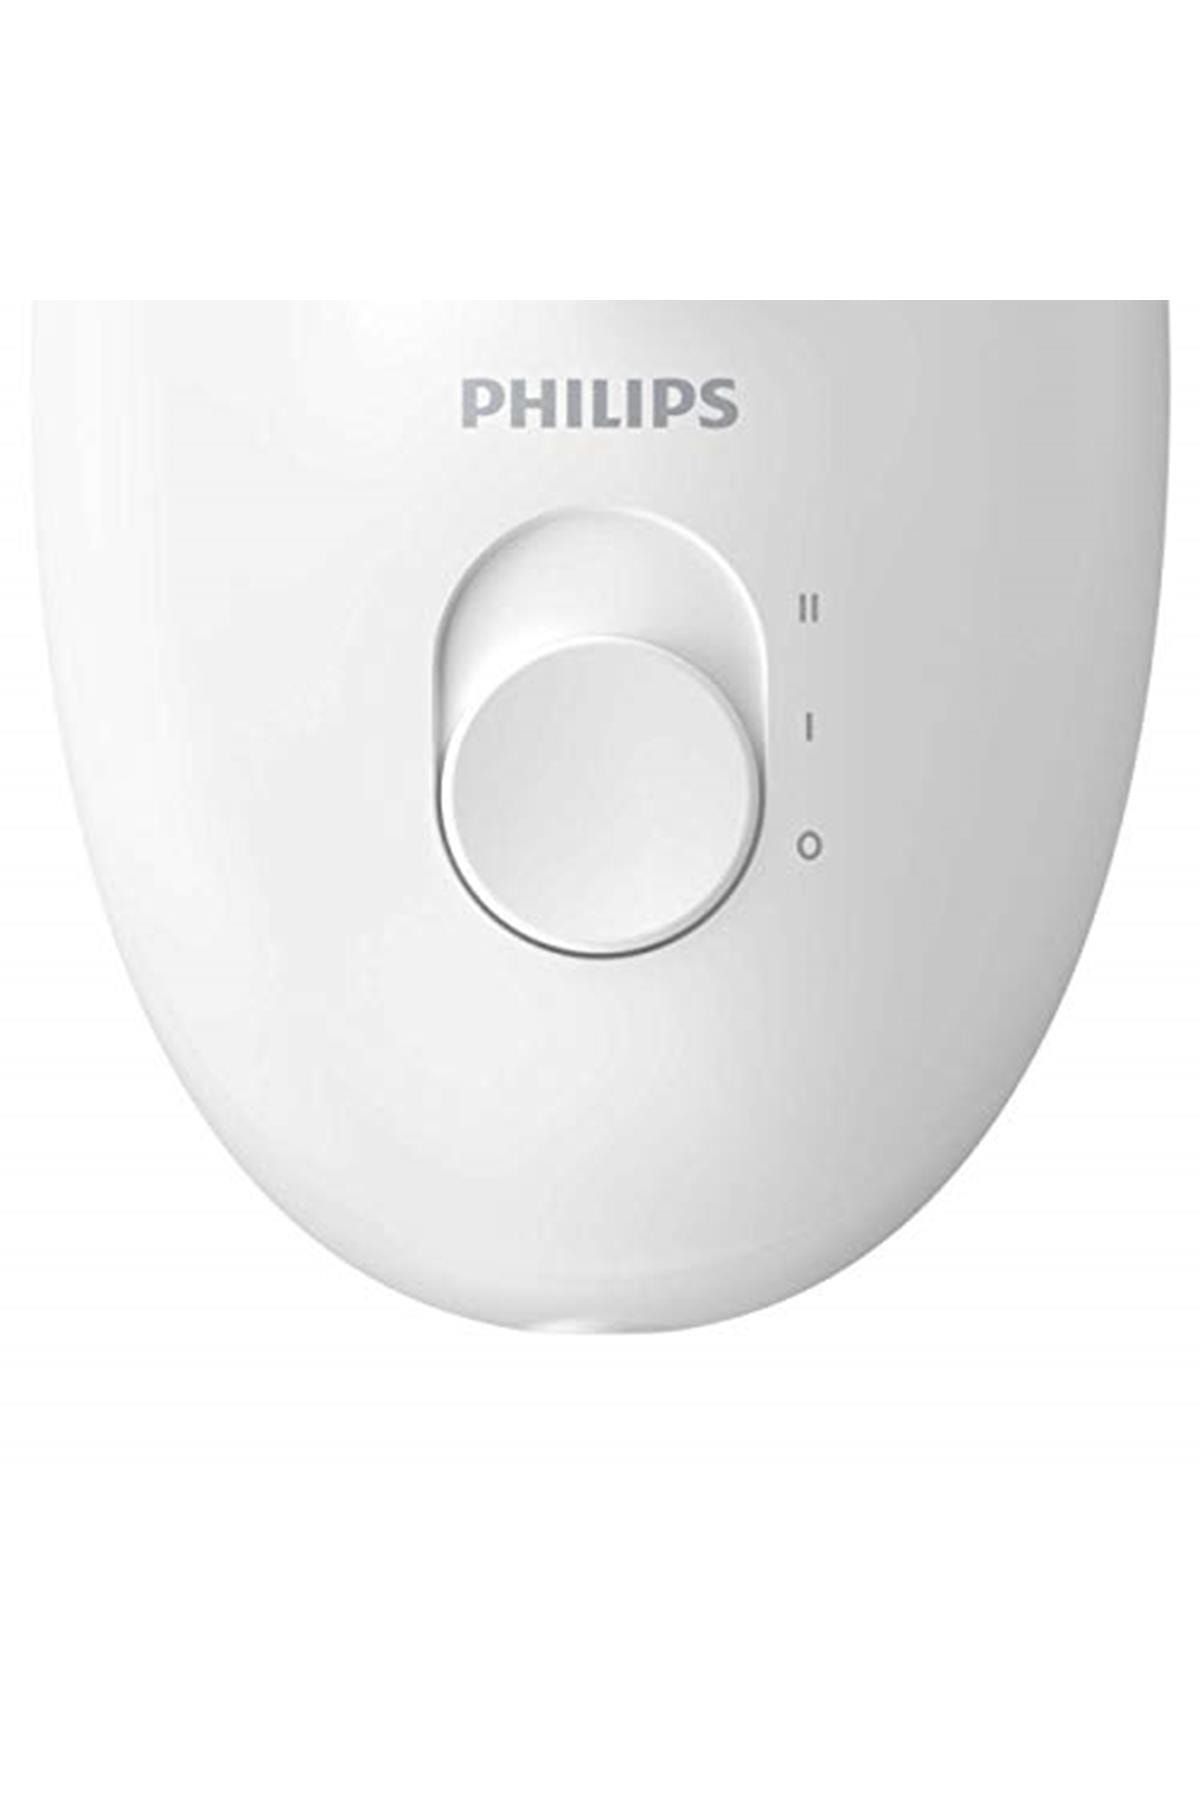 Philips Marka: Bre225/05 Satinelle Essential Kablolu Kompakt Epilatör Kategori: Mutfak Düzenleyicil